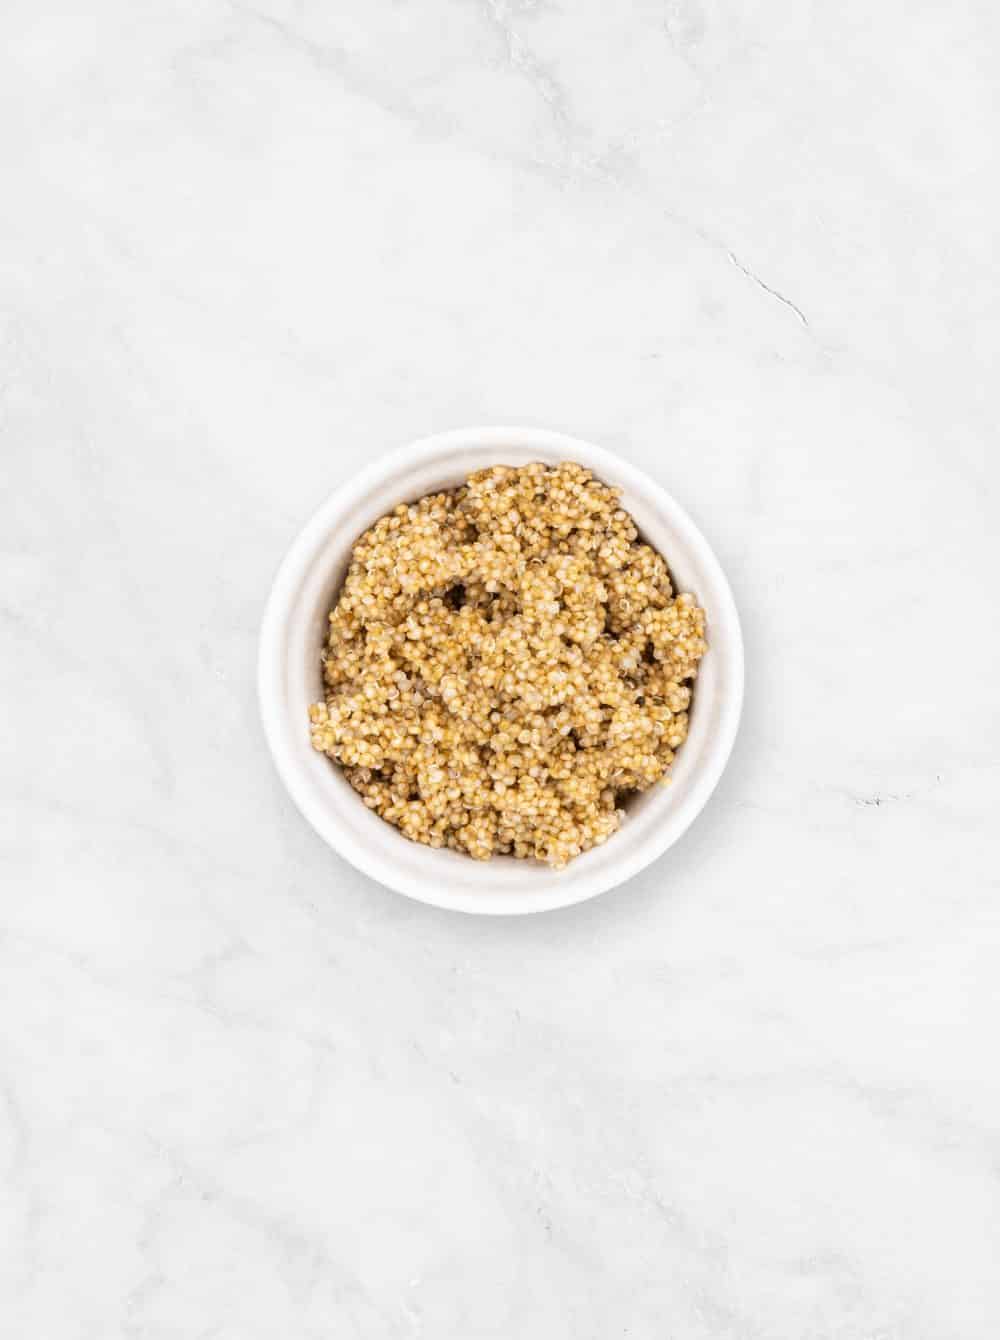 Lys quinoa forkogt klar til brug